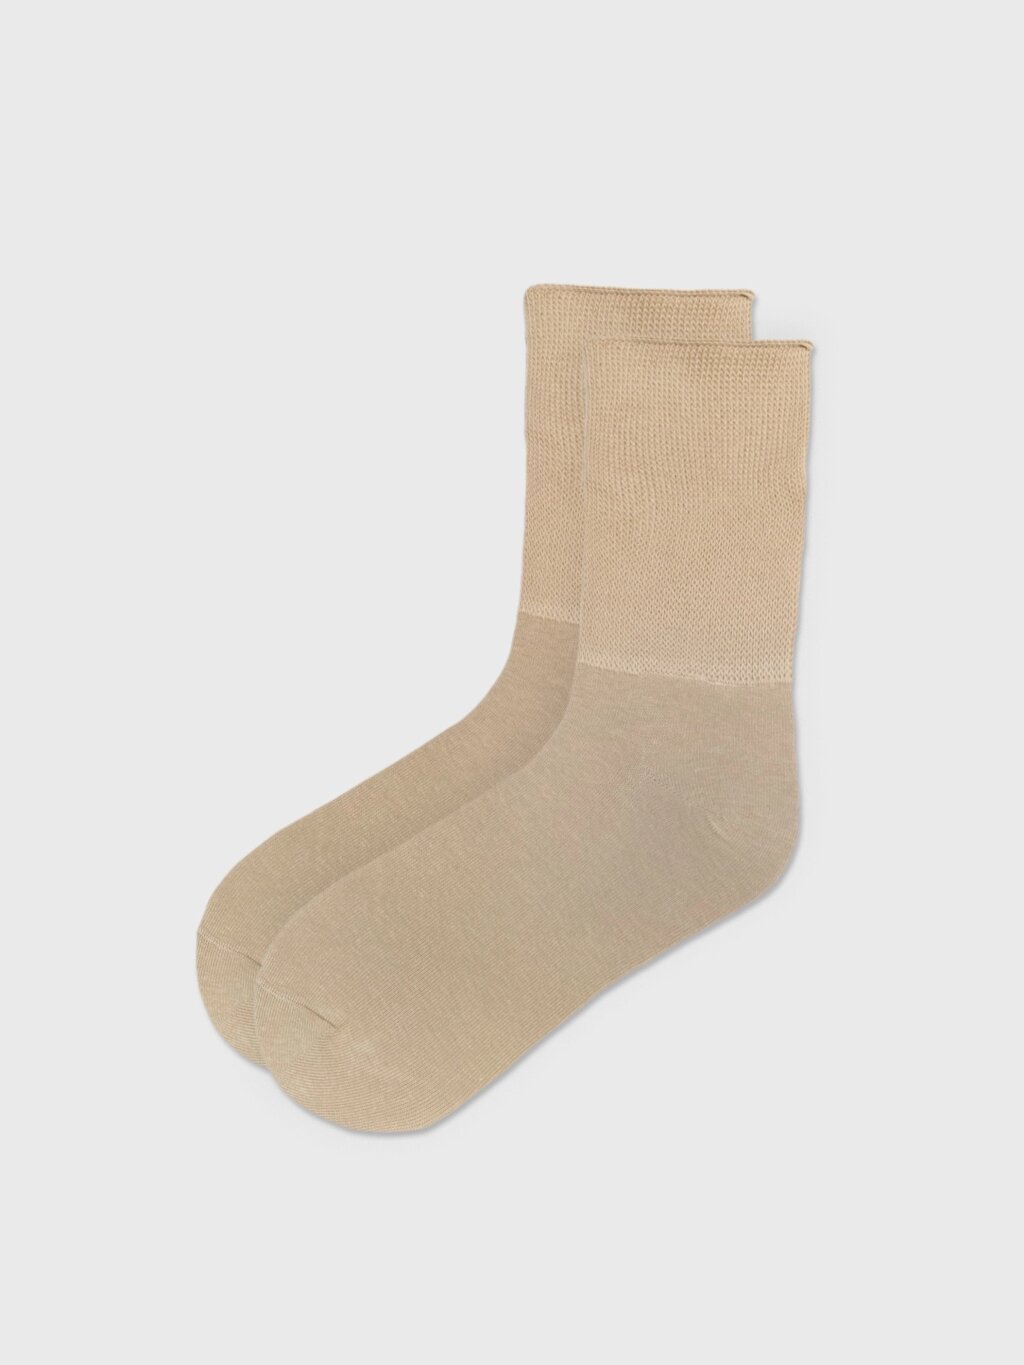 Удлинённые носки бежевые (35-37) от компании Admi - фото 1